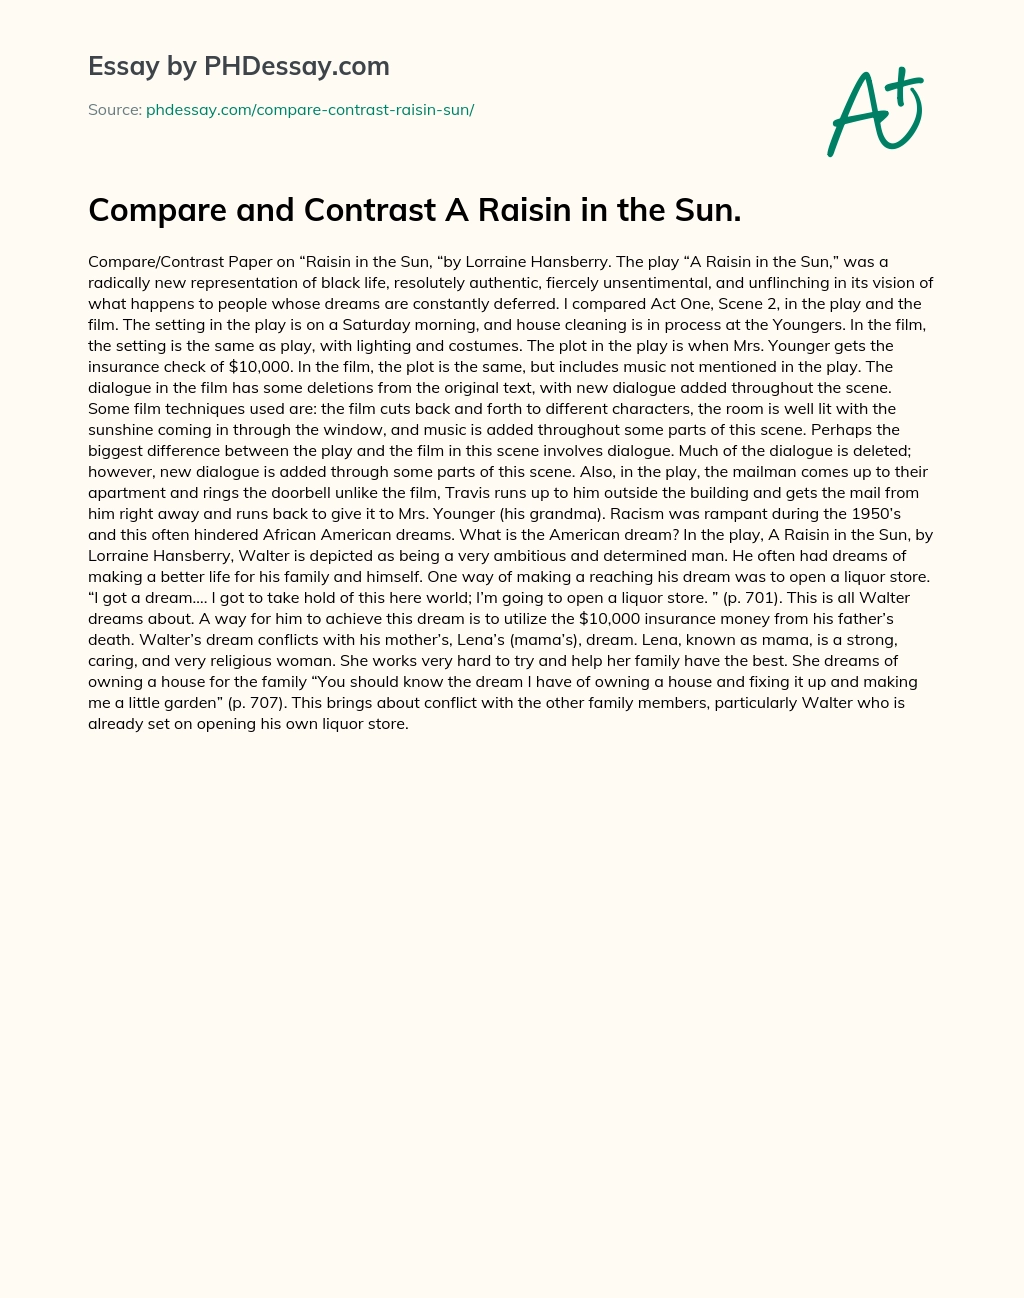 Compare and Contrast A Raisin in the Sun essay